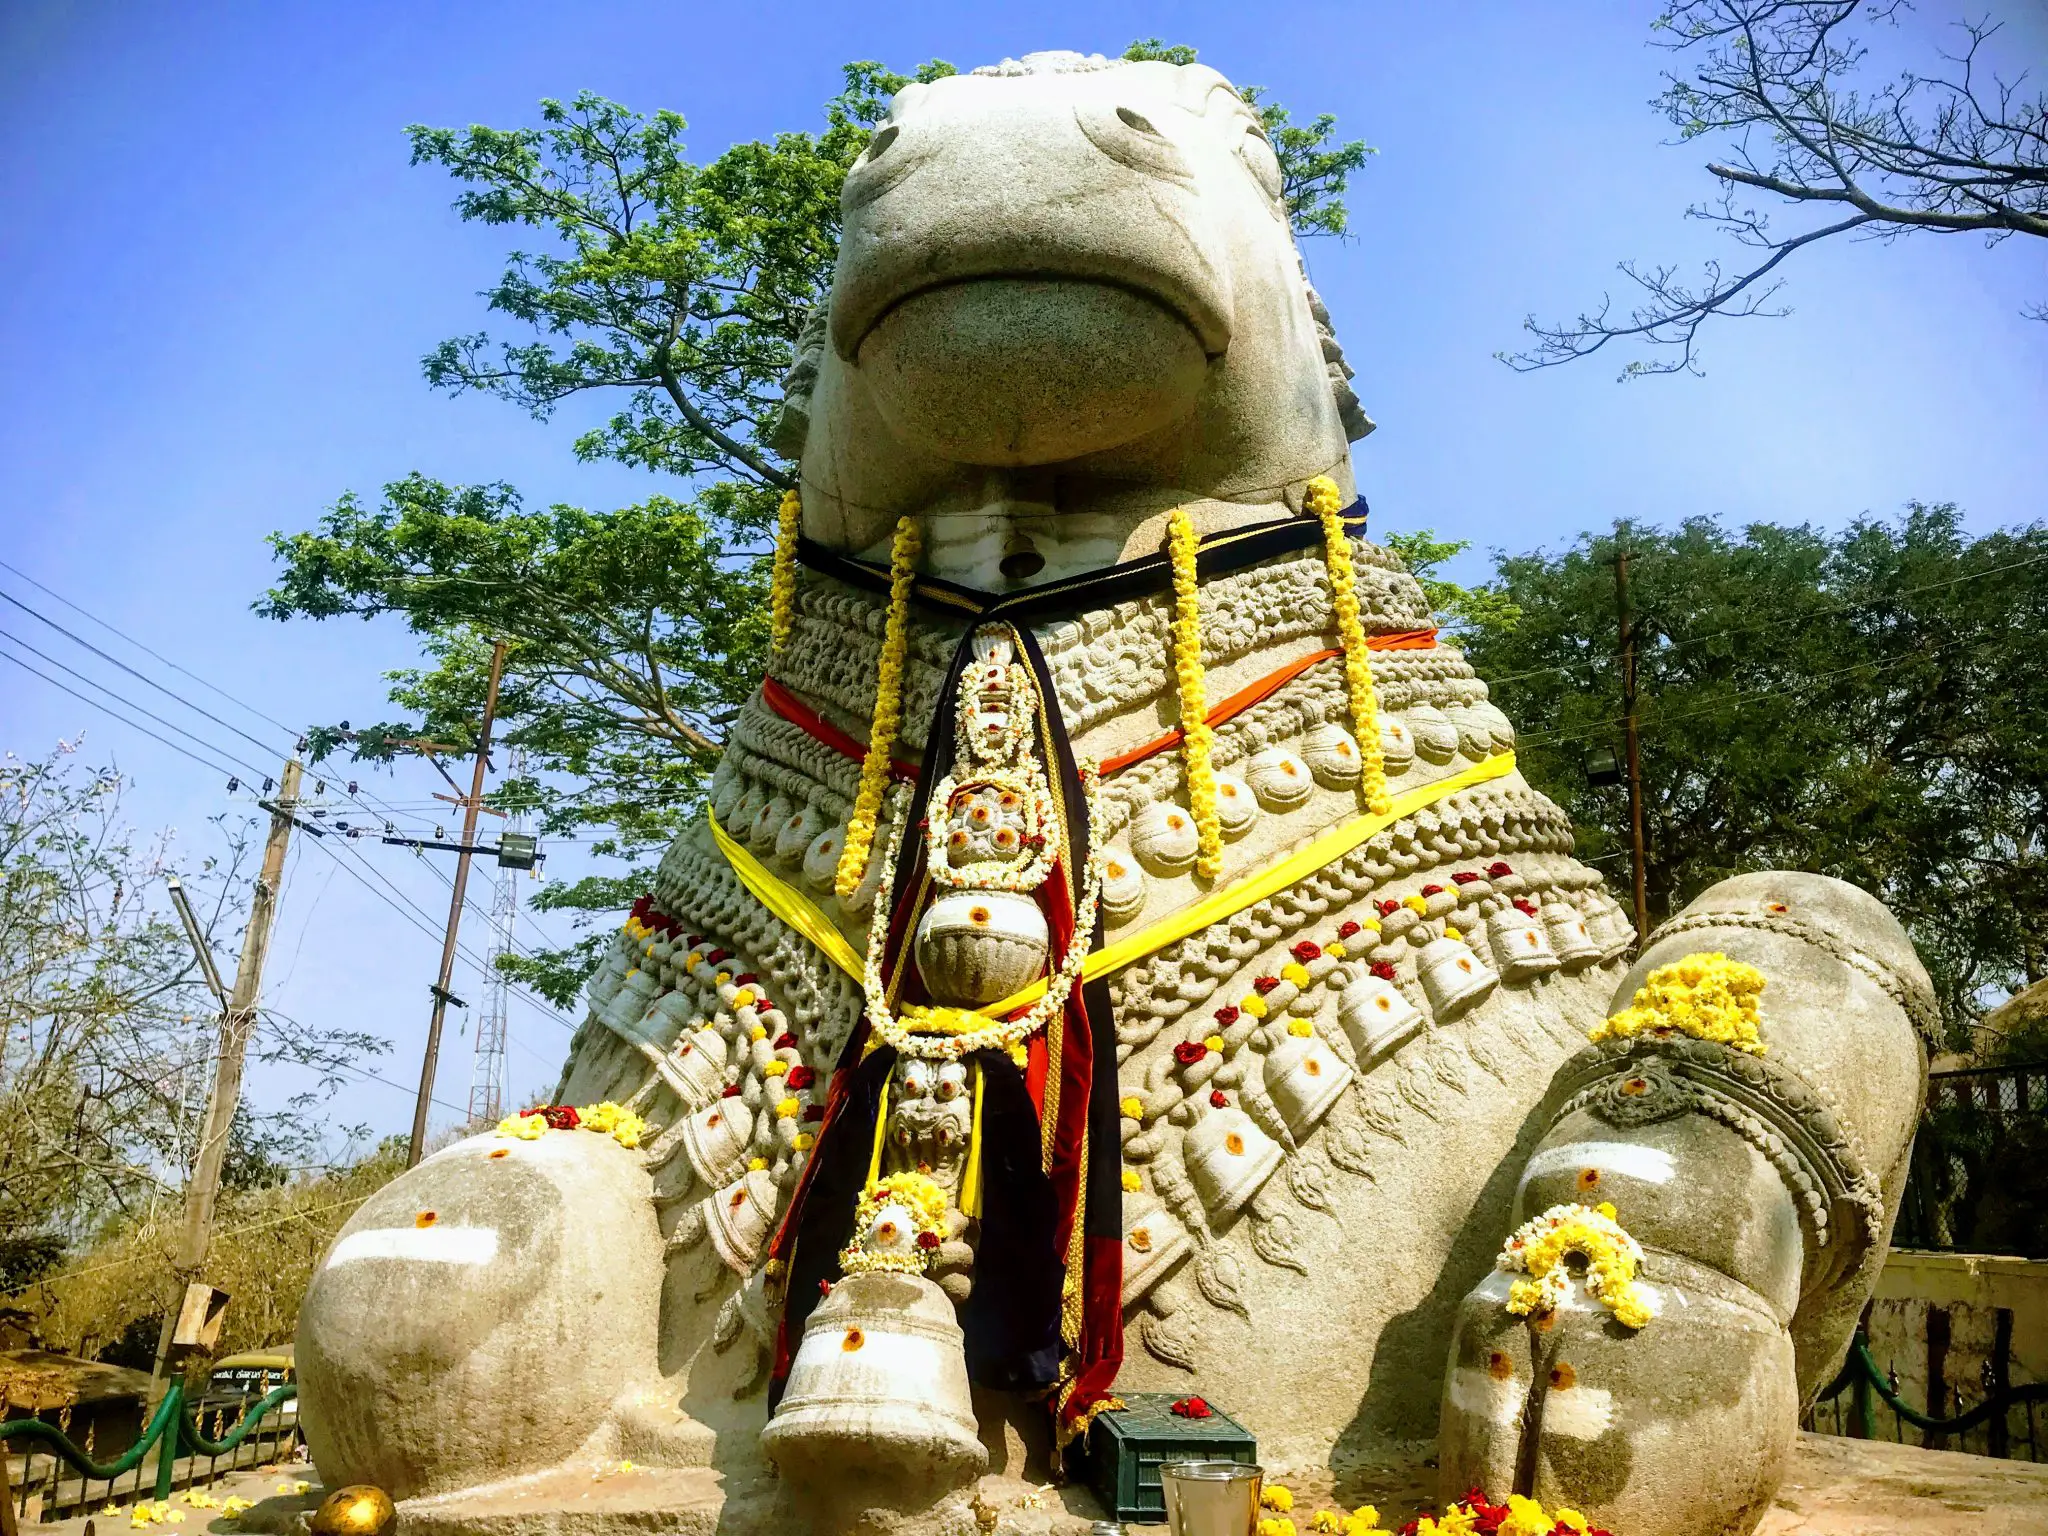 Nandi (bull) temple, Chamundi Hill, Mysore/Mysuru, South India